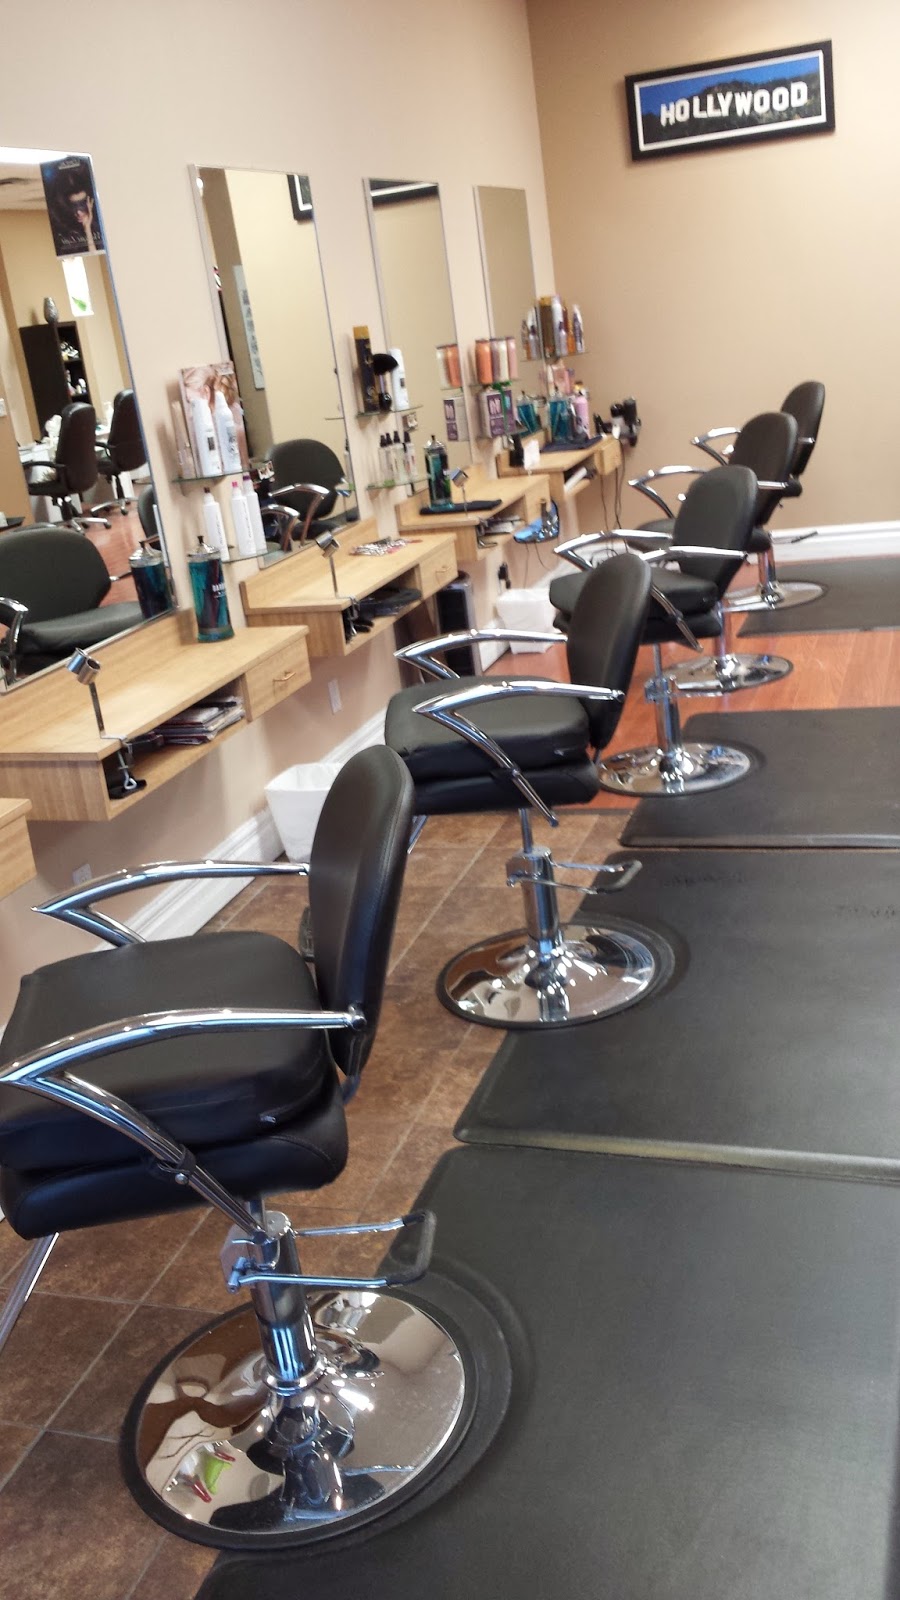 California Hairworks | hair care | 2388 Fairview St &, 2025 Guelph Line, Burlington, ON L7R 2E4, Canada | 9056344466 OR +1 905-634-4466